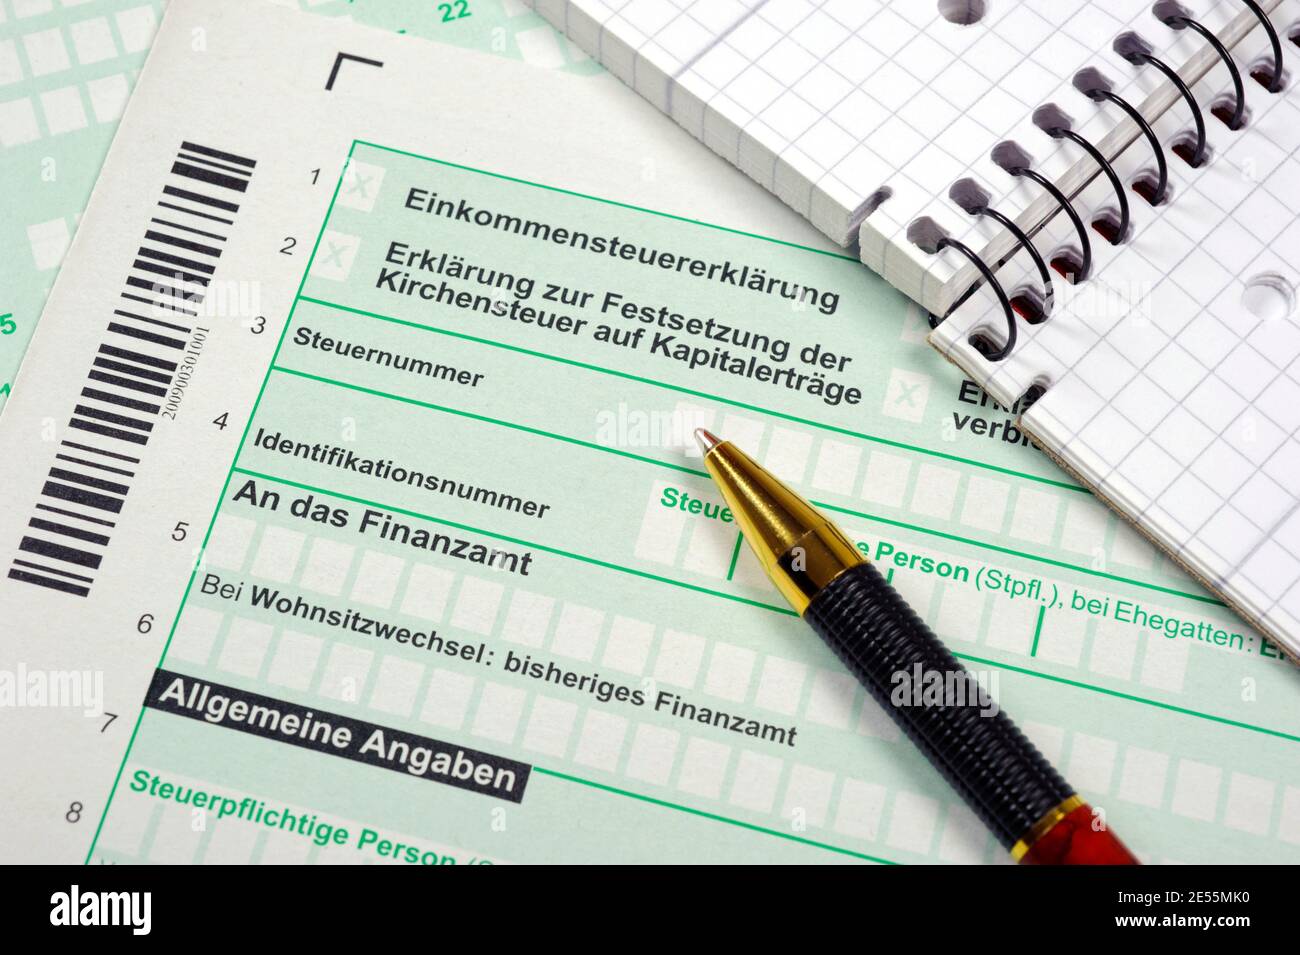 Formular für Einkommensteuererklärung beim Finanzamt Stock Photo